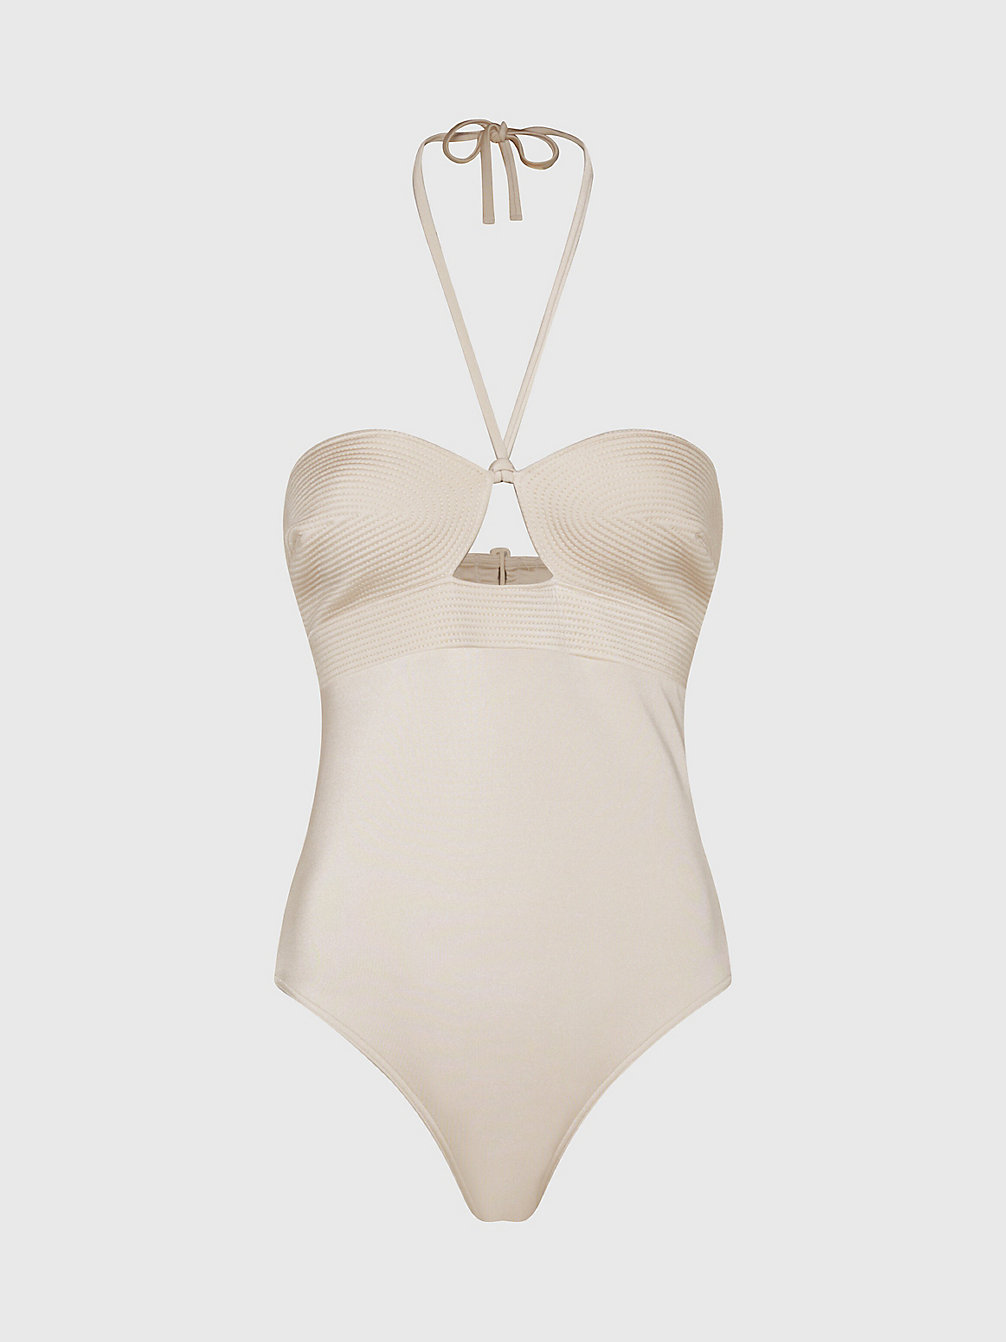 STONY BEIGE Halter Neck Swimsuit - Structured undefined women Calvin Klein